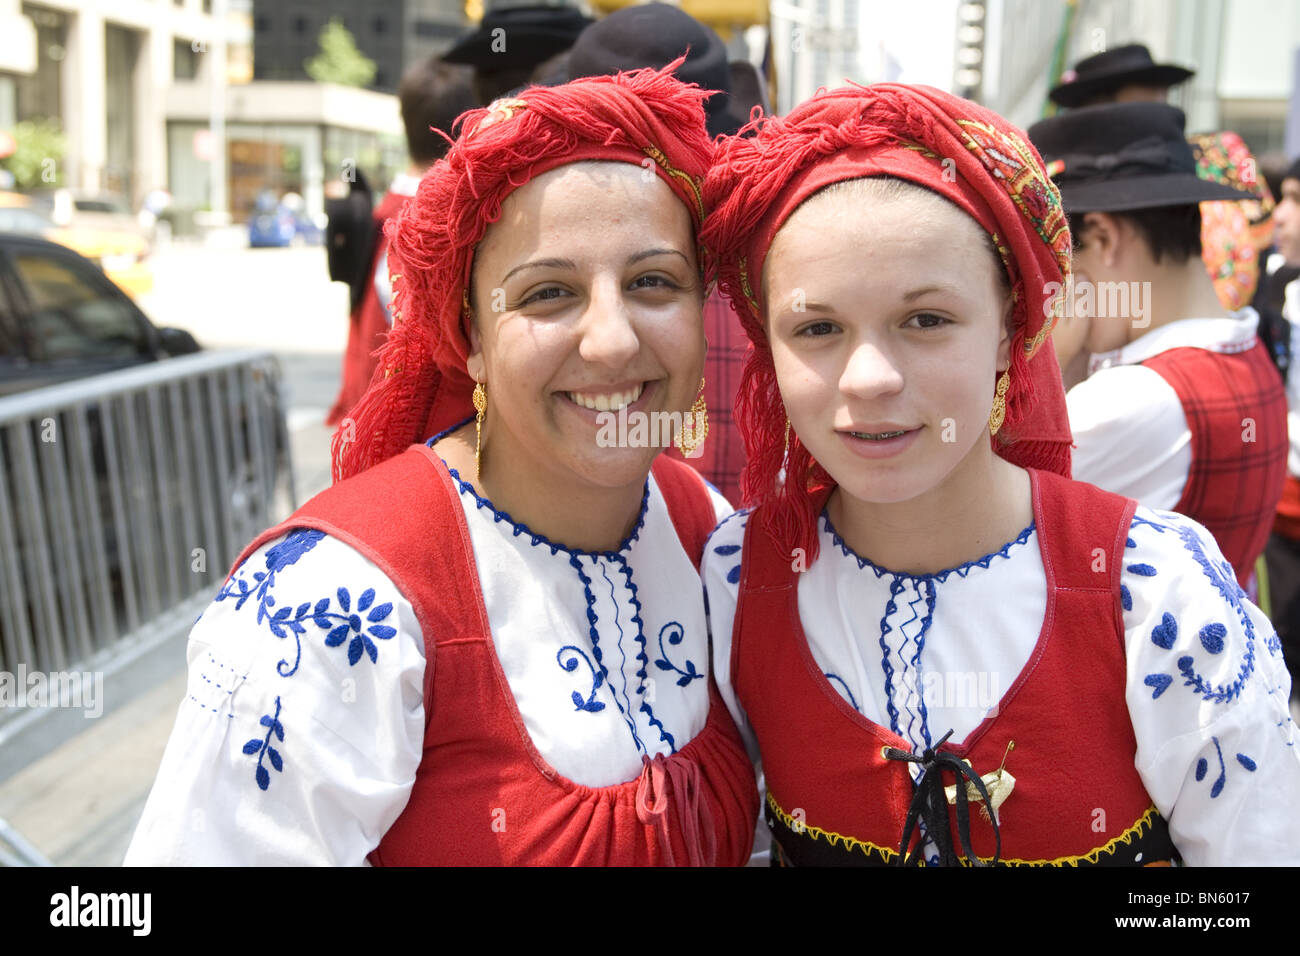 Los inmigrantes internacionales Parade, NYC: Madre e hija en traje folclórico que representa la comunidad portuguesa en Nueva York. Foto de stock